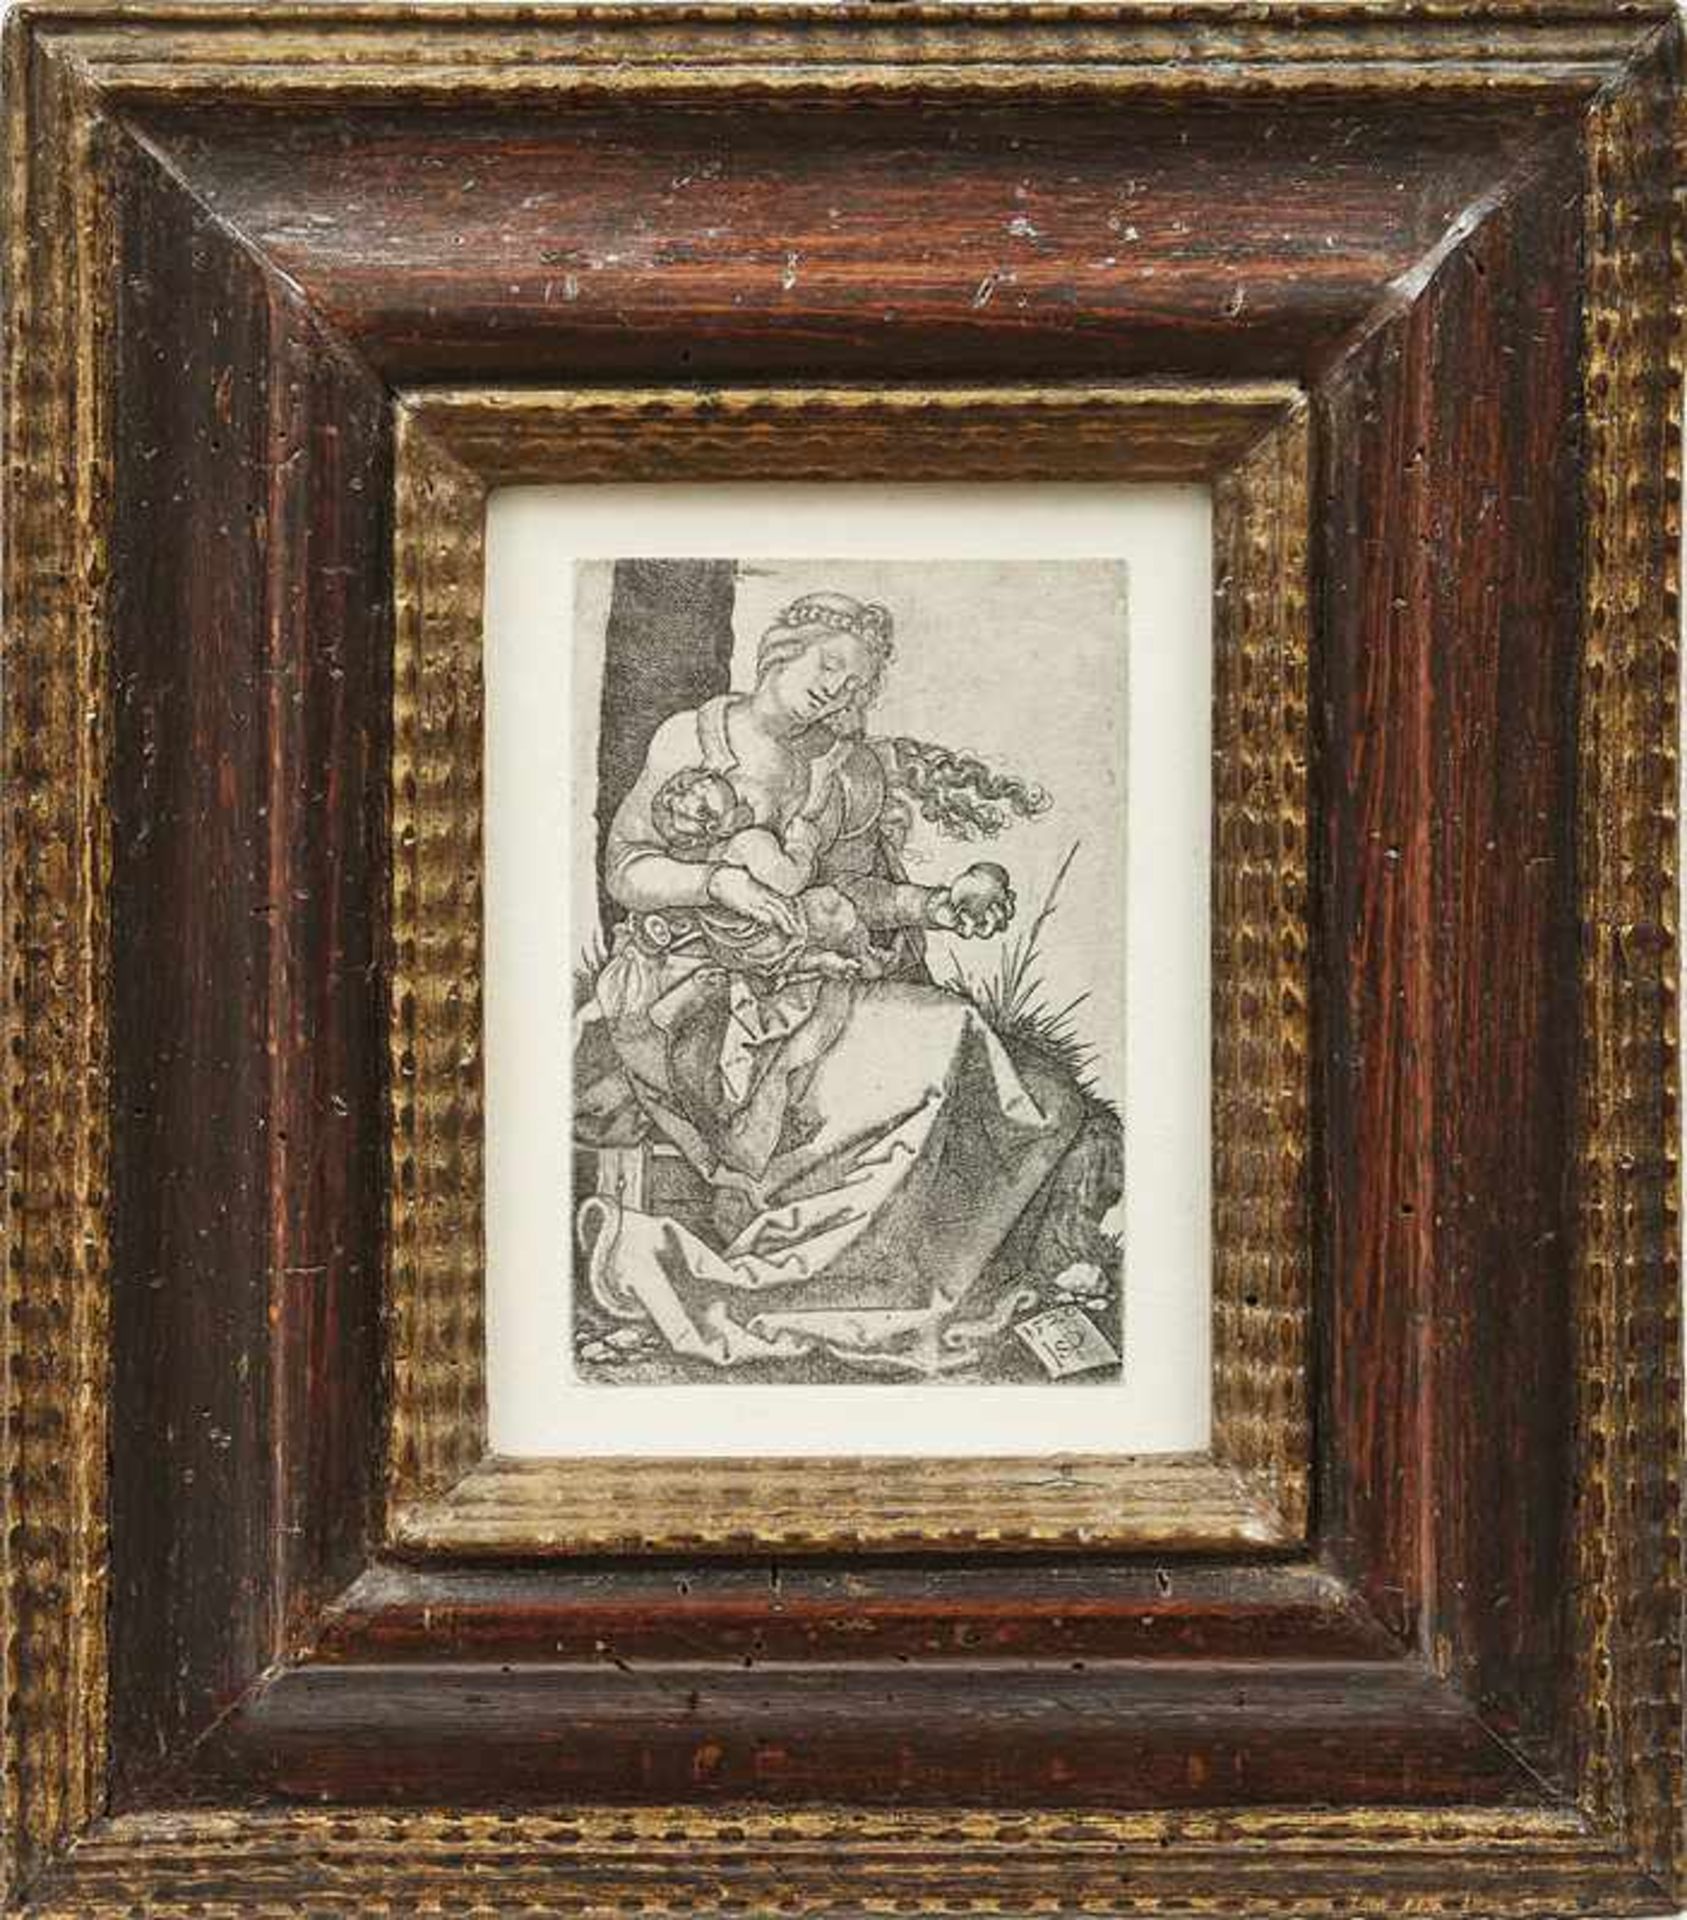 Beham, Hans SebaldDie Madonna mit der Birne(Nürnberg 1500-1550 Frankfurt am Main) Kupferstich.